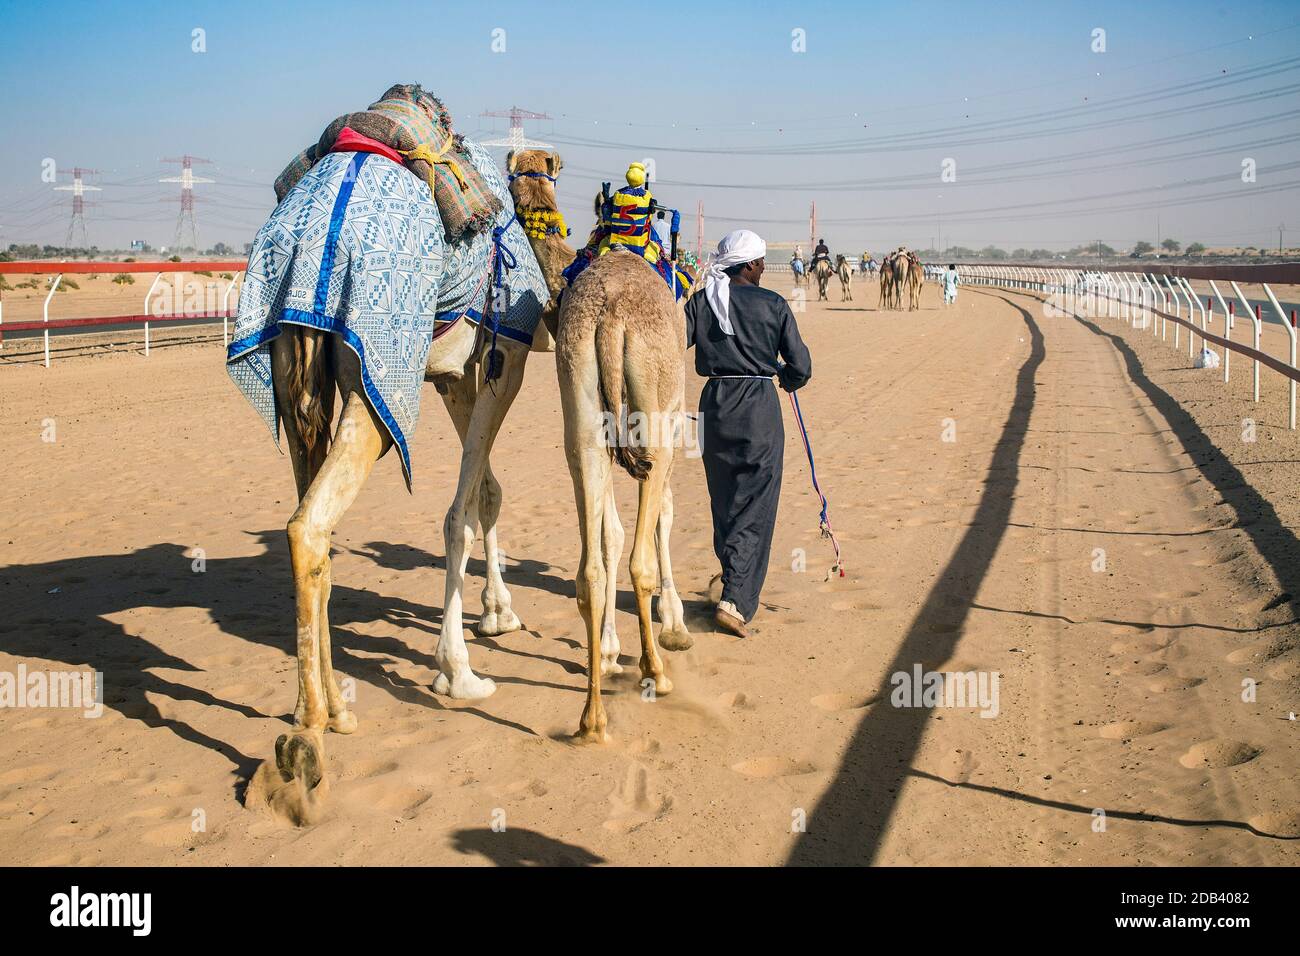 Vereinigte Arabische Emirate / Al Dhaid / Kamelrennen in Zentrale Region des Emirats Sharjah in den Vereinigten Staaten Arabische EmirateDie Handler sichern auch kleine Ele Stockfoto